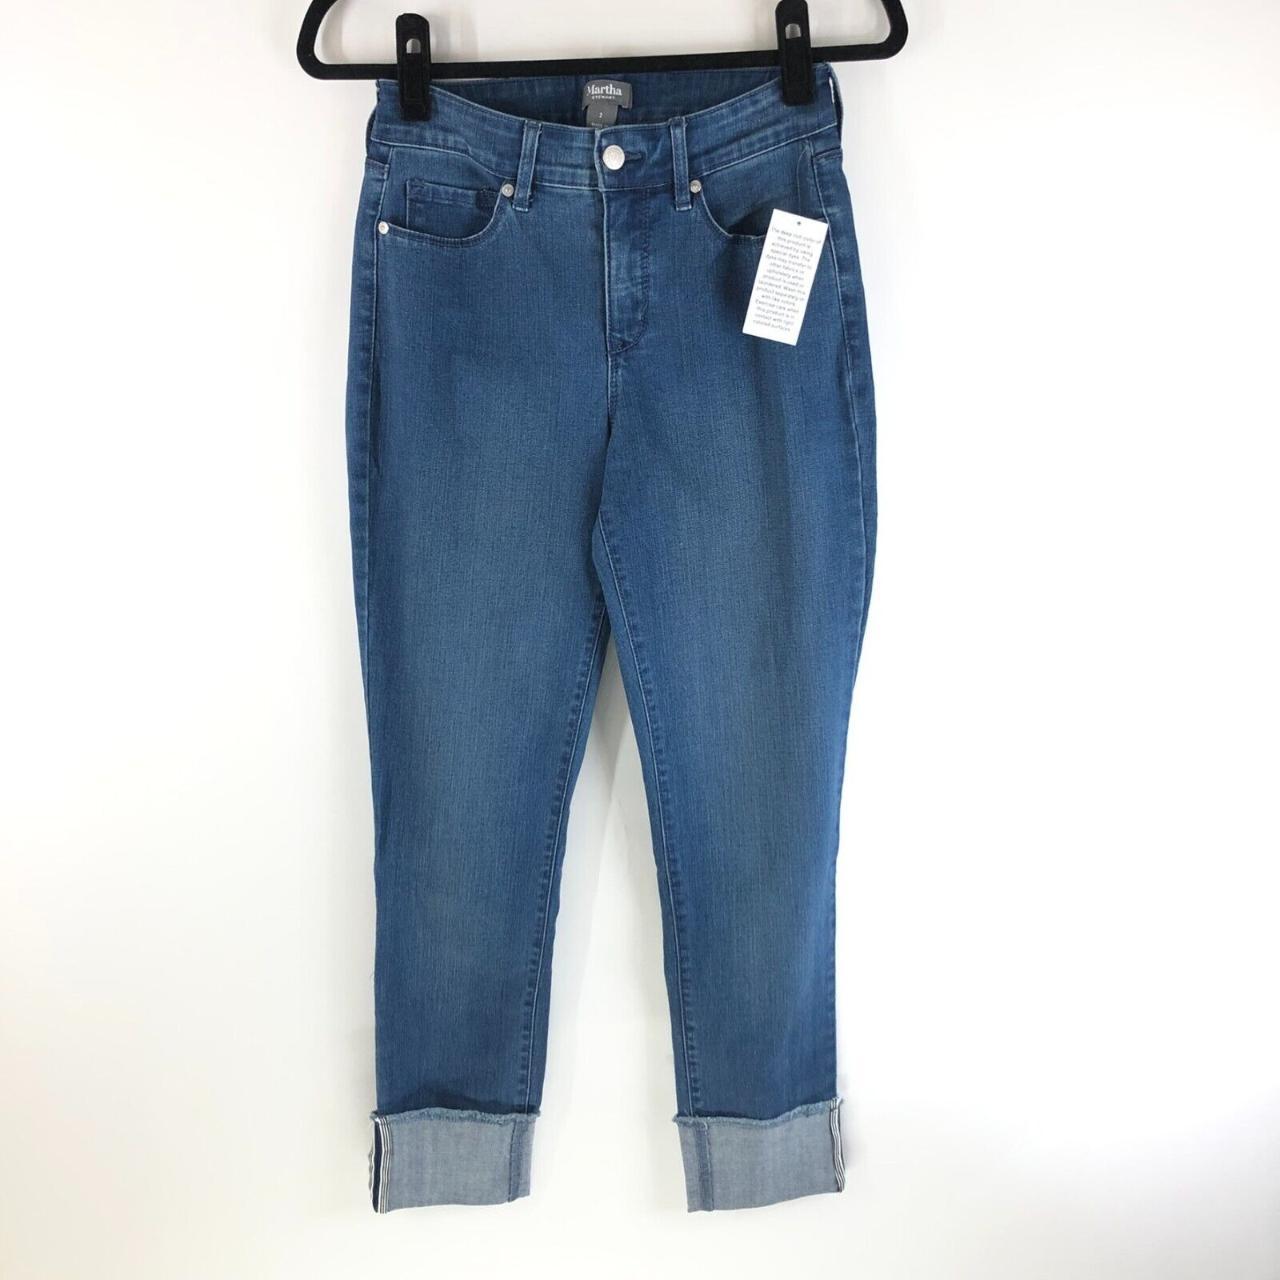 Martha Stewart Collection Women's Blue Jeans